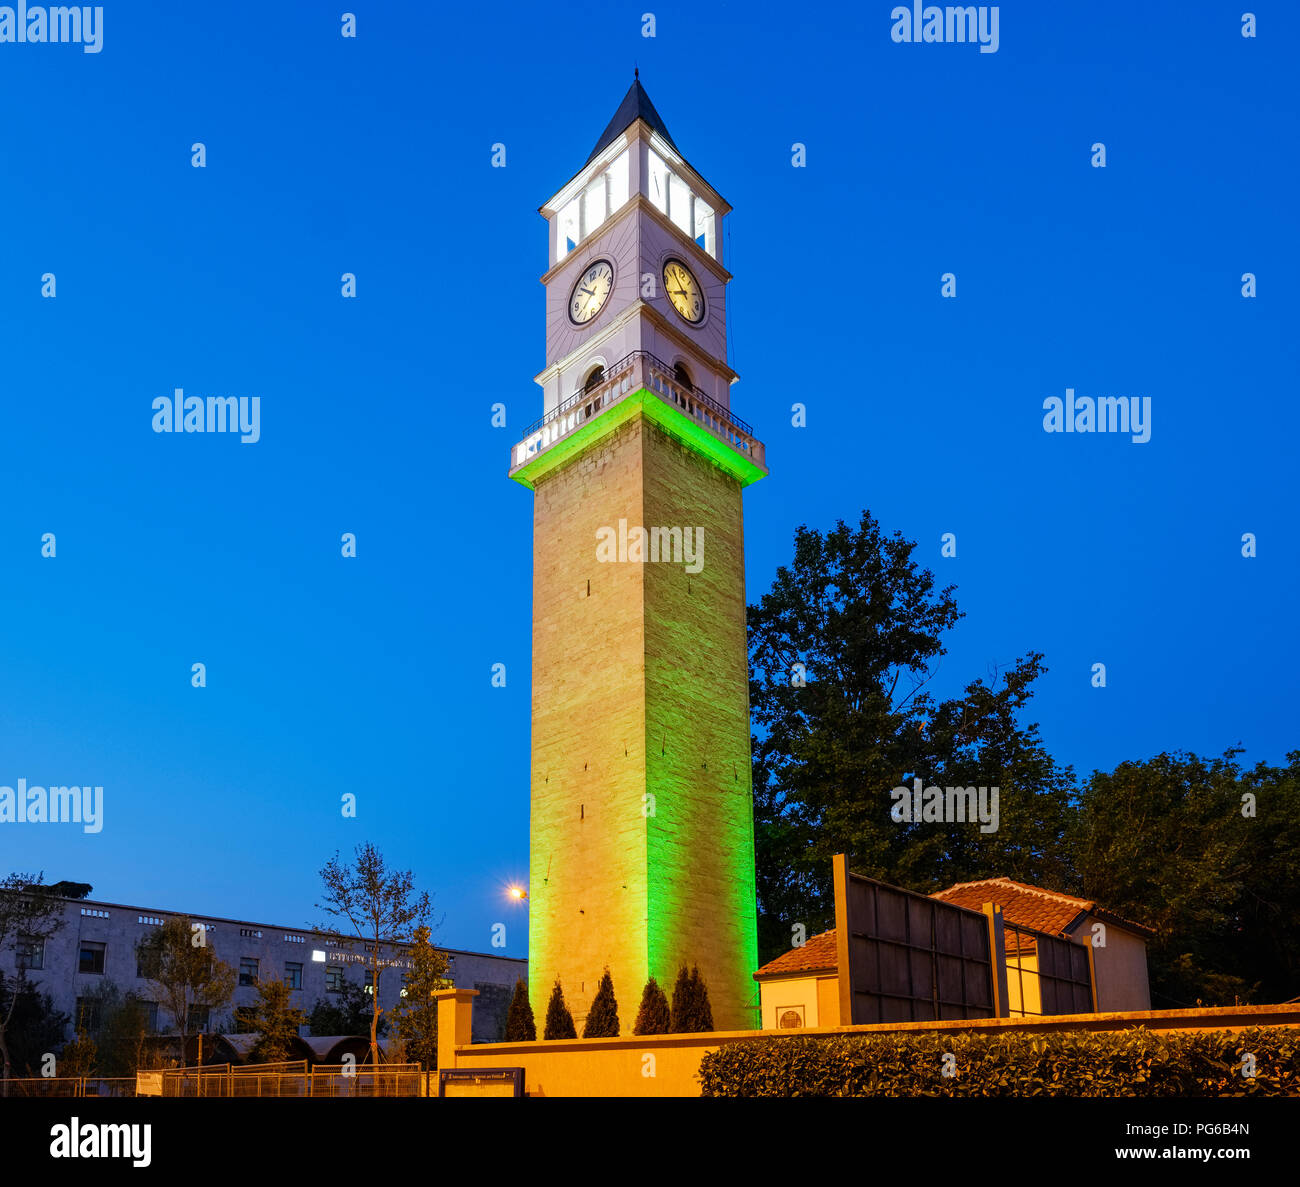 L'Albanie, Tirana, horloge de Tirana à l'heure bleue Banque D'Images